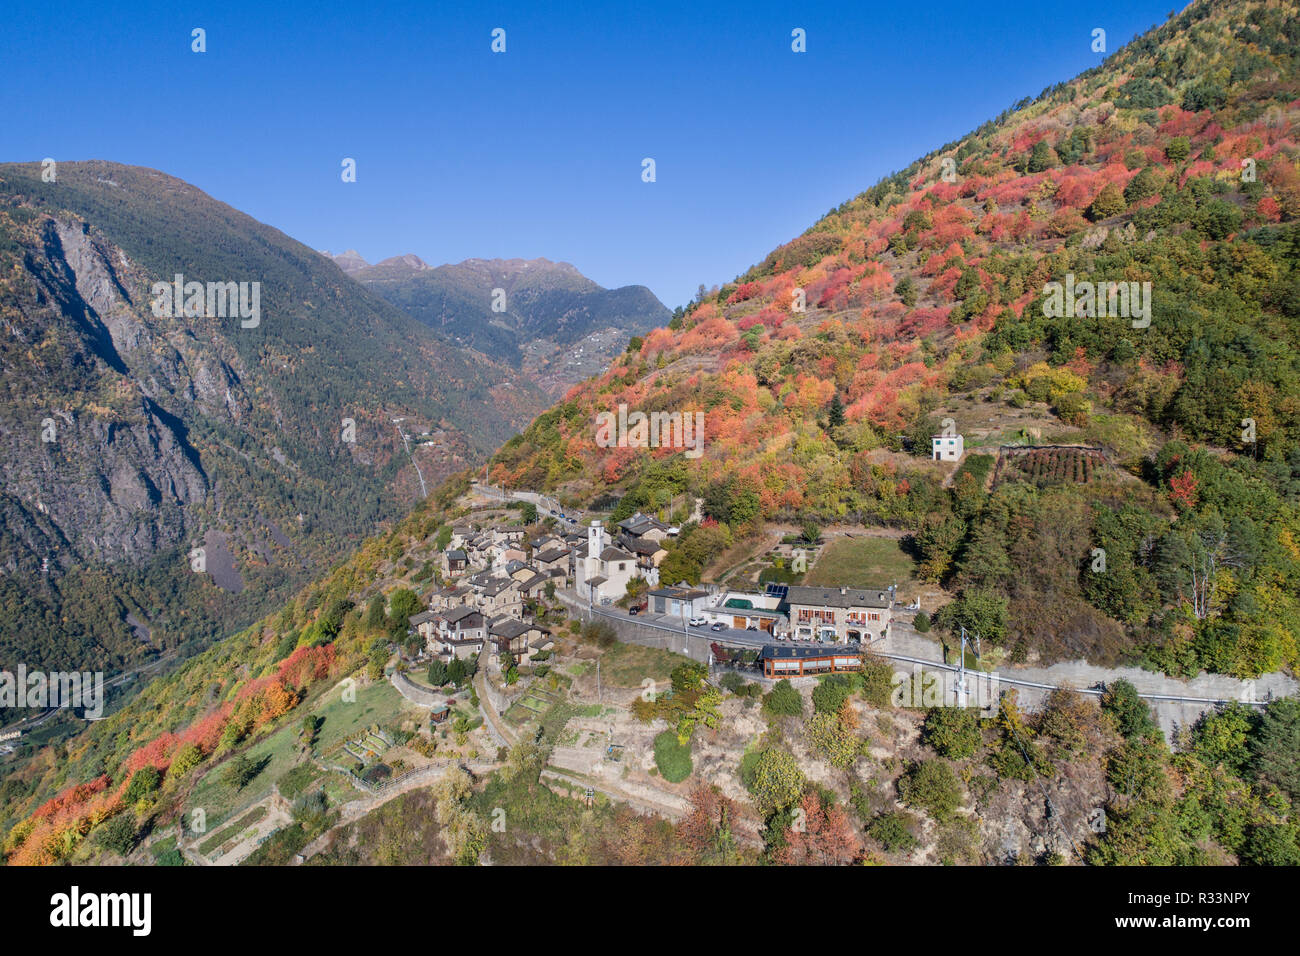 Little village of Roncaiola near Tirano. Mountain village in Valtellina, Autumn landscape. Province of Sondrio. Stock Photo